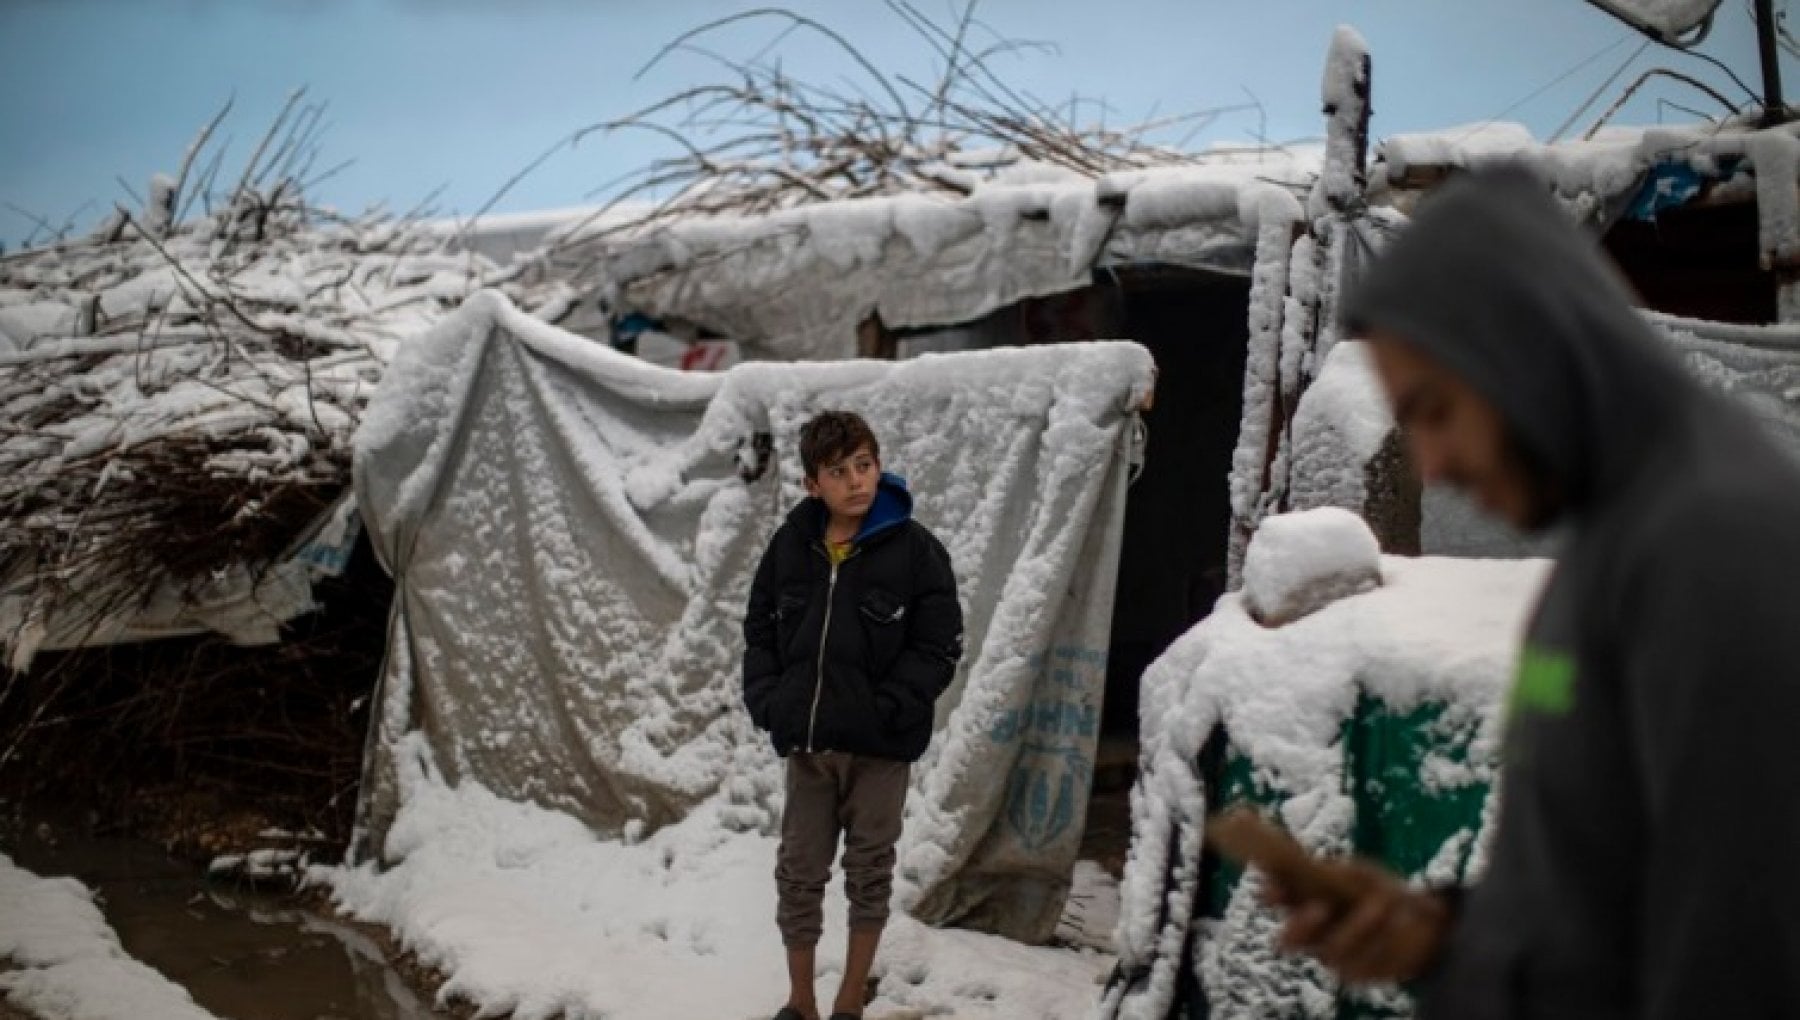 Unhcr chiama tutti a raccolta: “Fai un gesto gentile” per salvare 3,3 milioni di rifugiati dal gelo